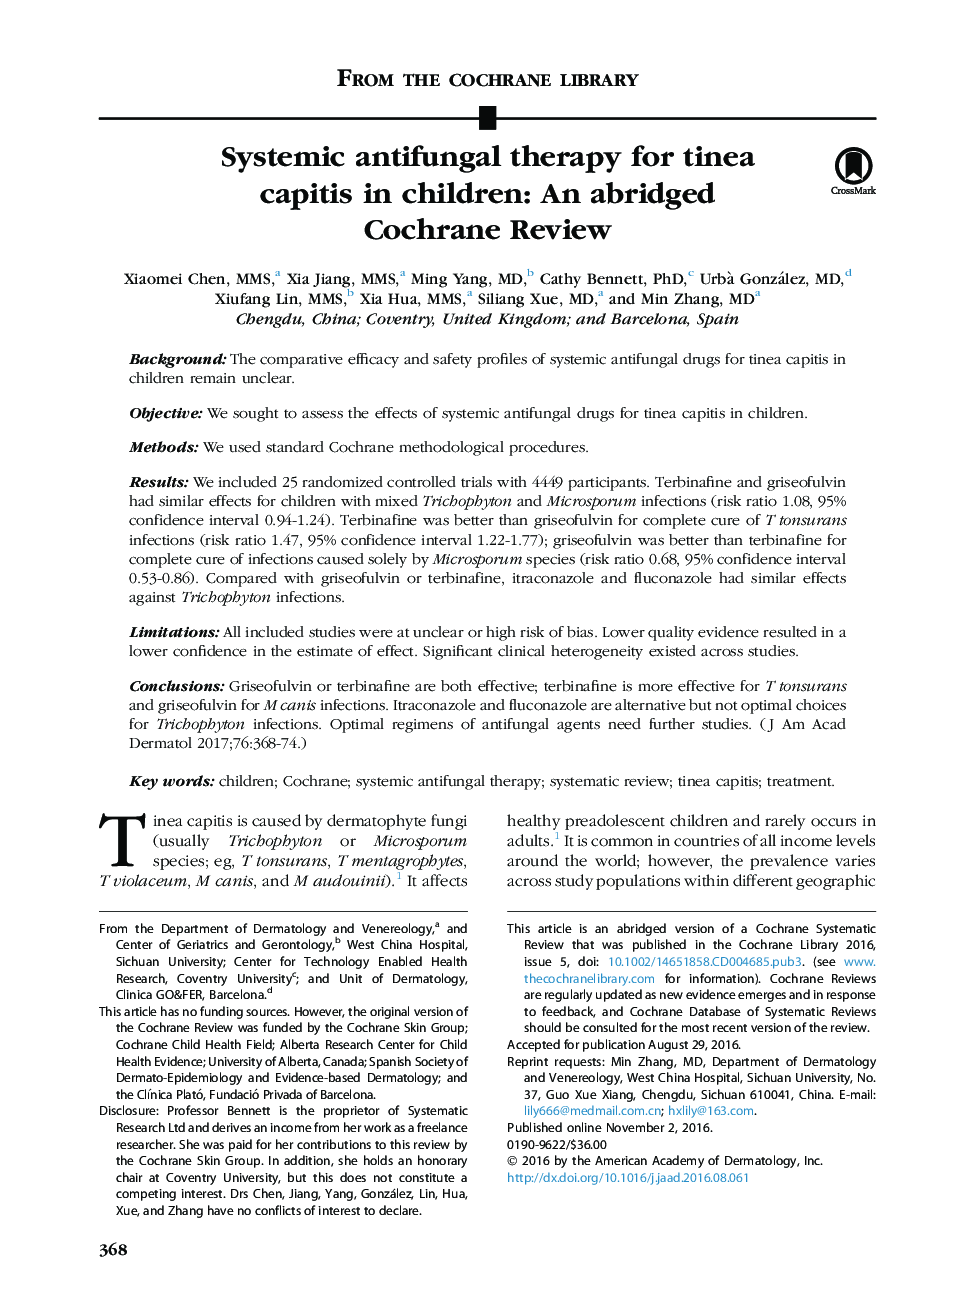 درمان ضد قارچی سیستمیک تندیس سرایت در کودکان: یک مرور کوتاه کاکرین 